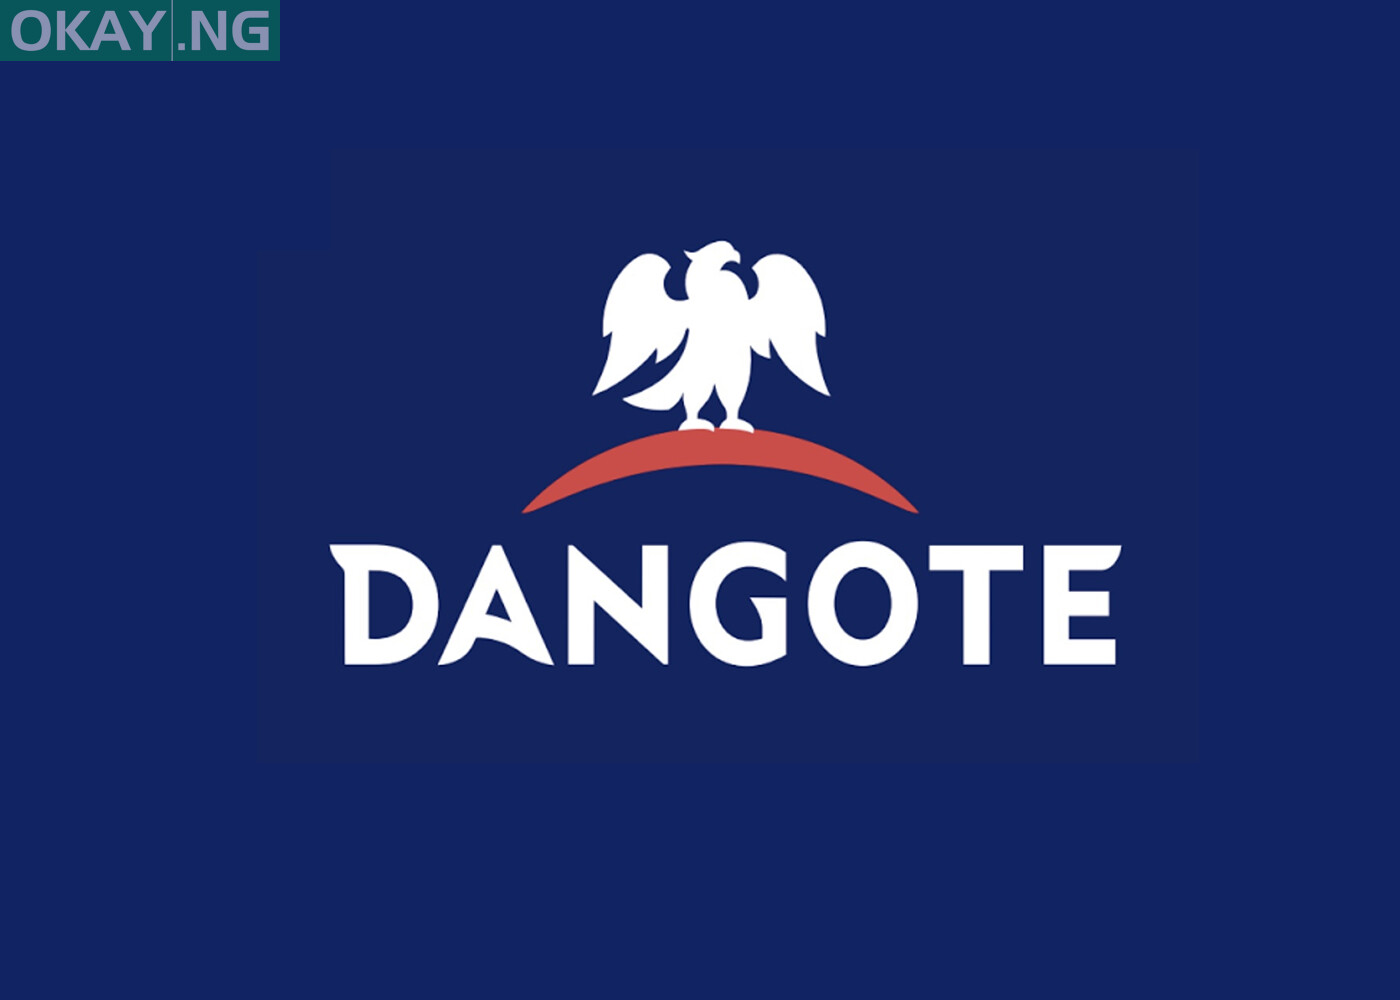 2021 Lagos Trade Fair: Dangote plans to delight participants